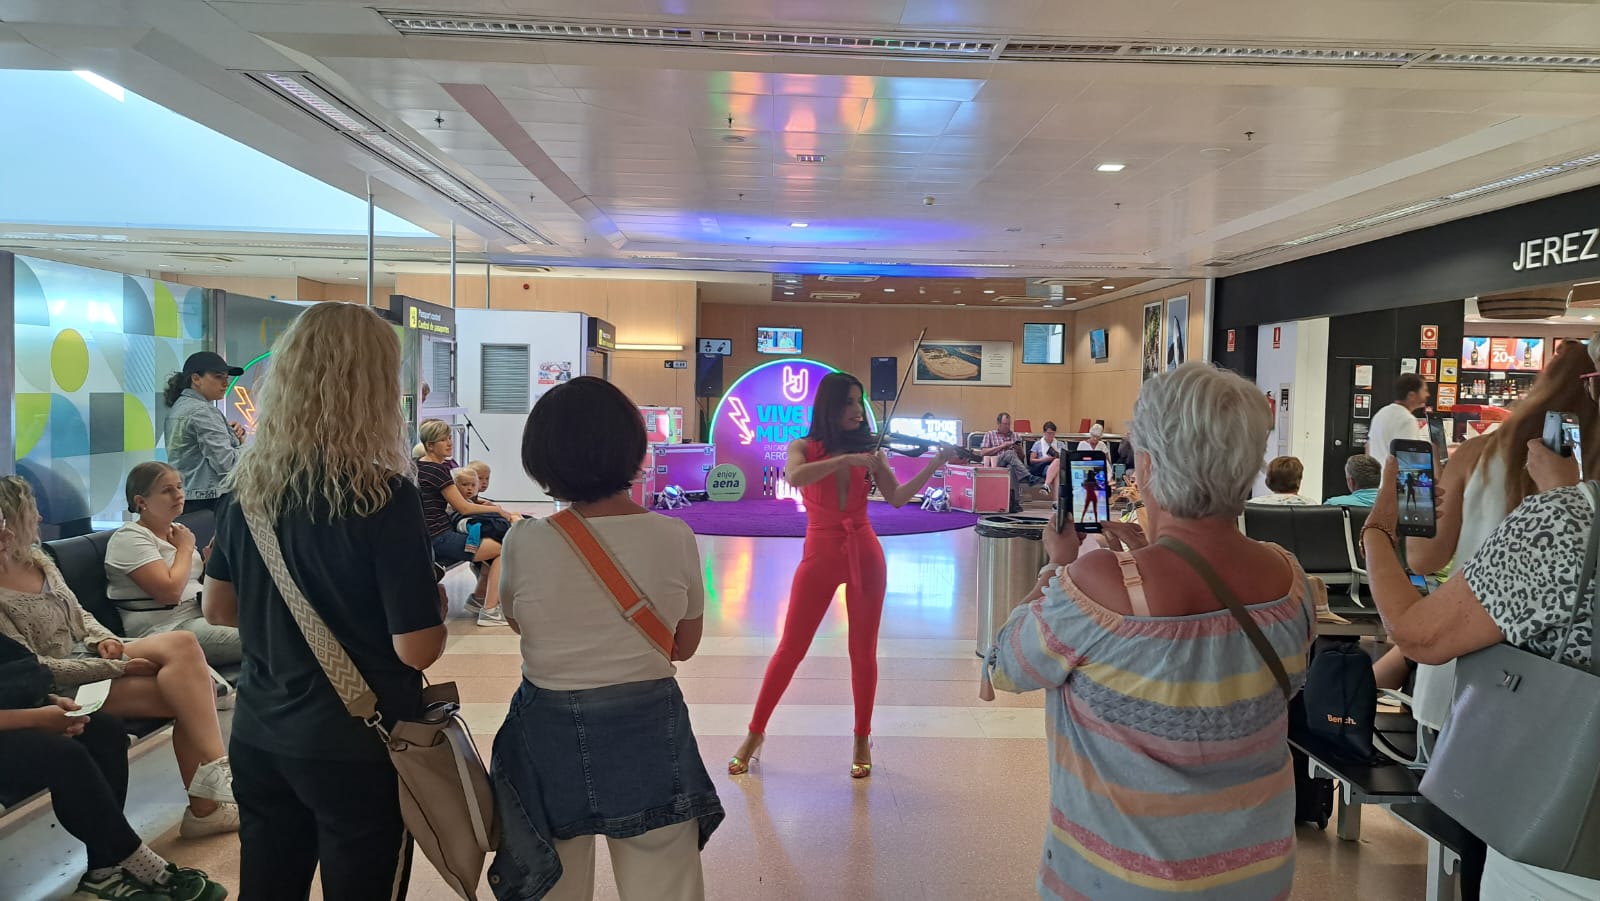 Música en directo en el Aeropuerto de Jerez para celebrar la llegada del verano. En la imagen, una violinista en la zona de embarque. 